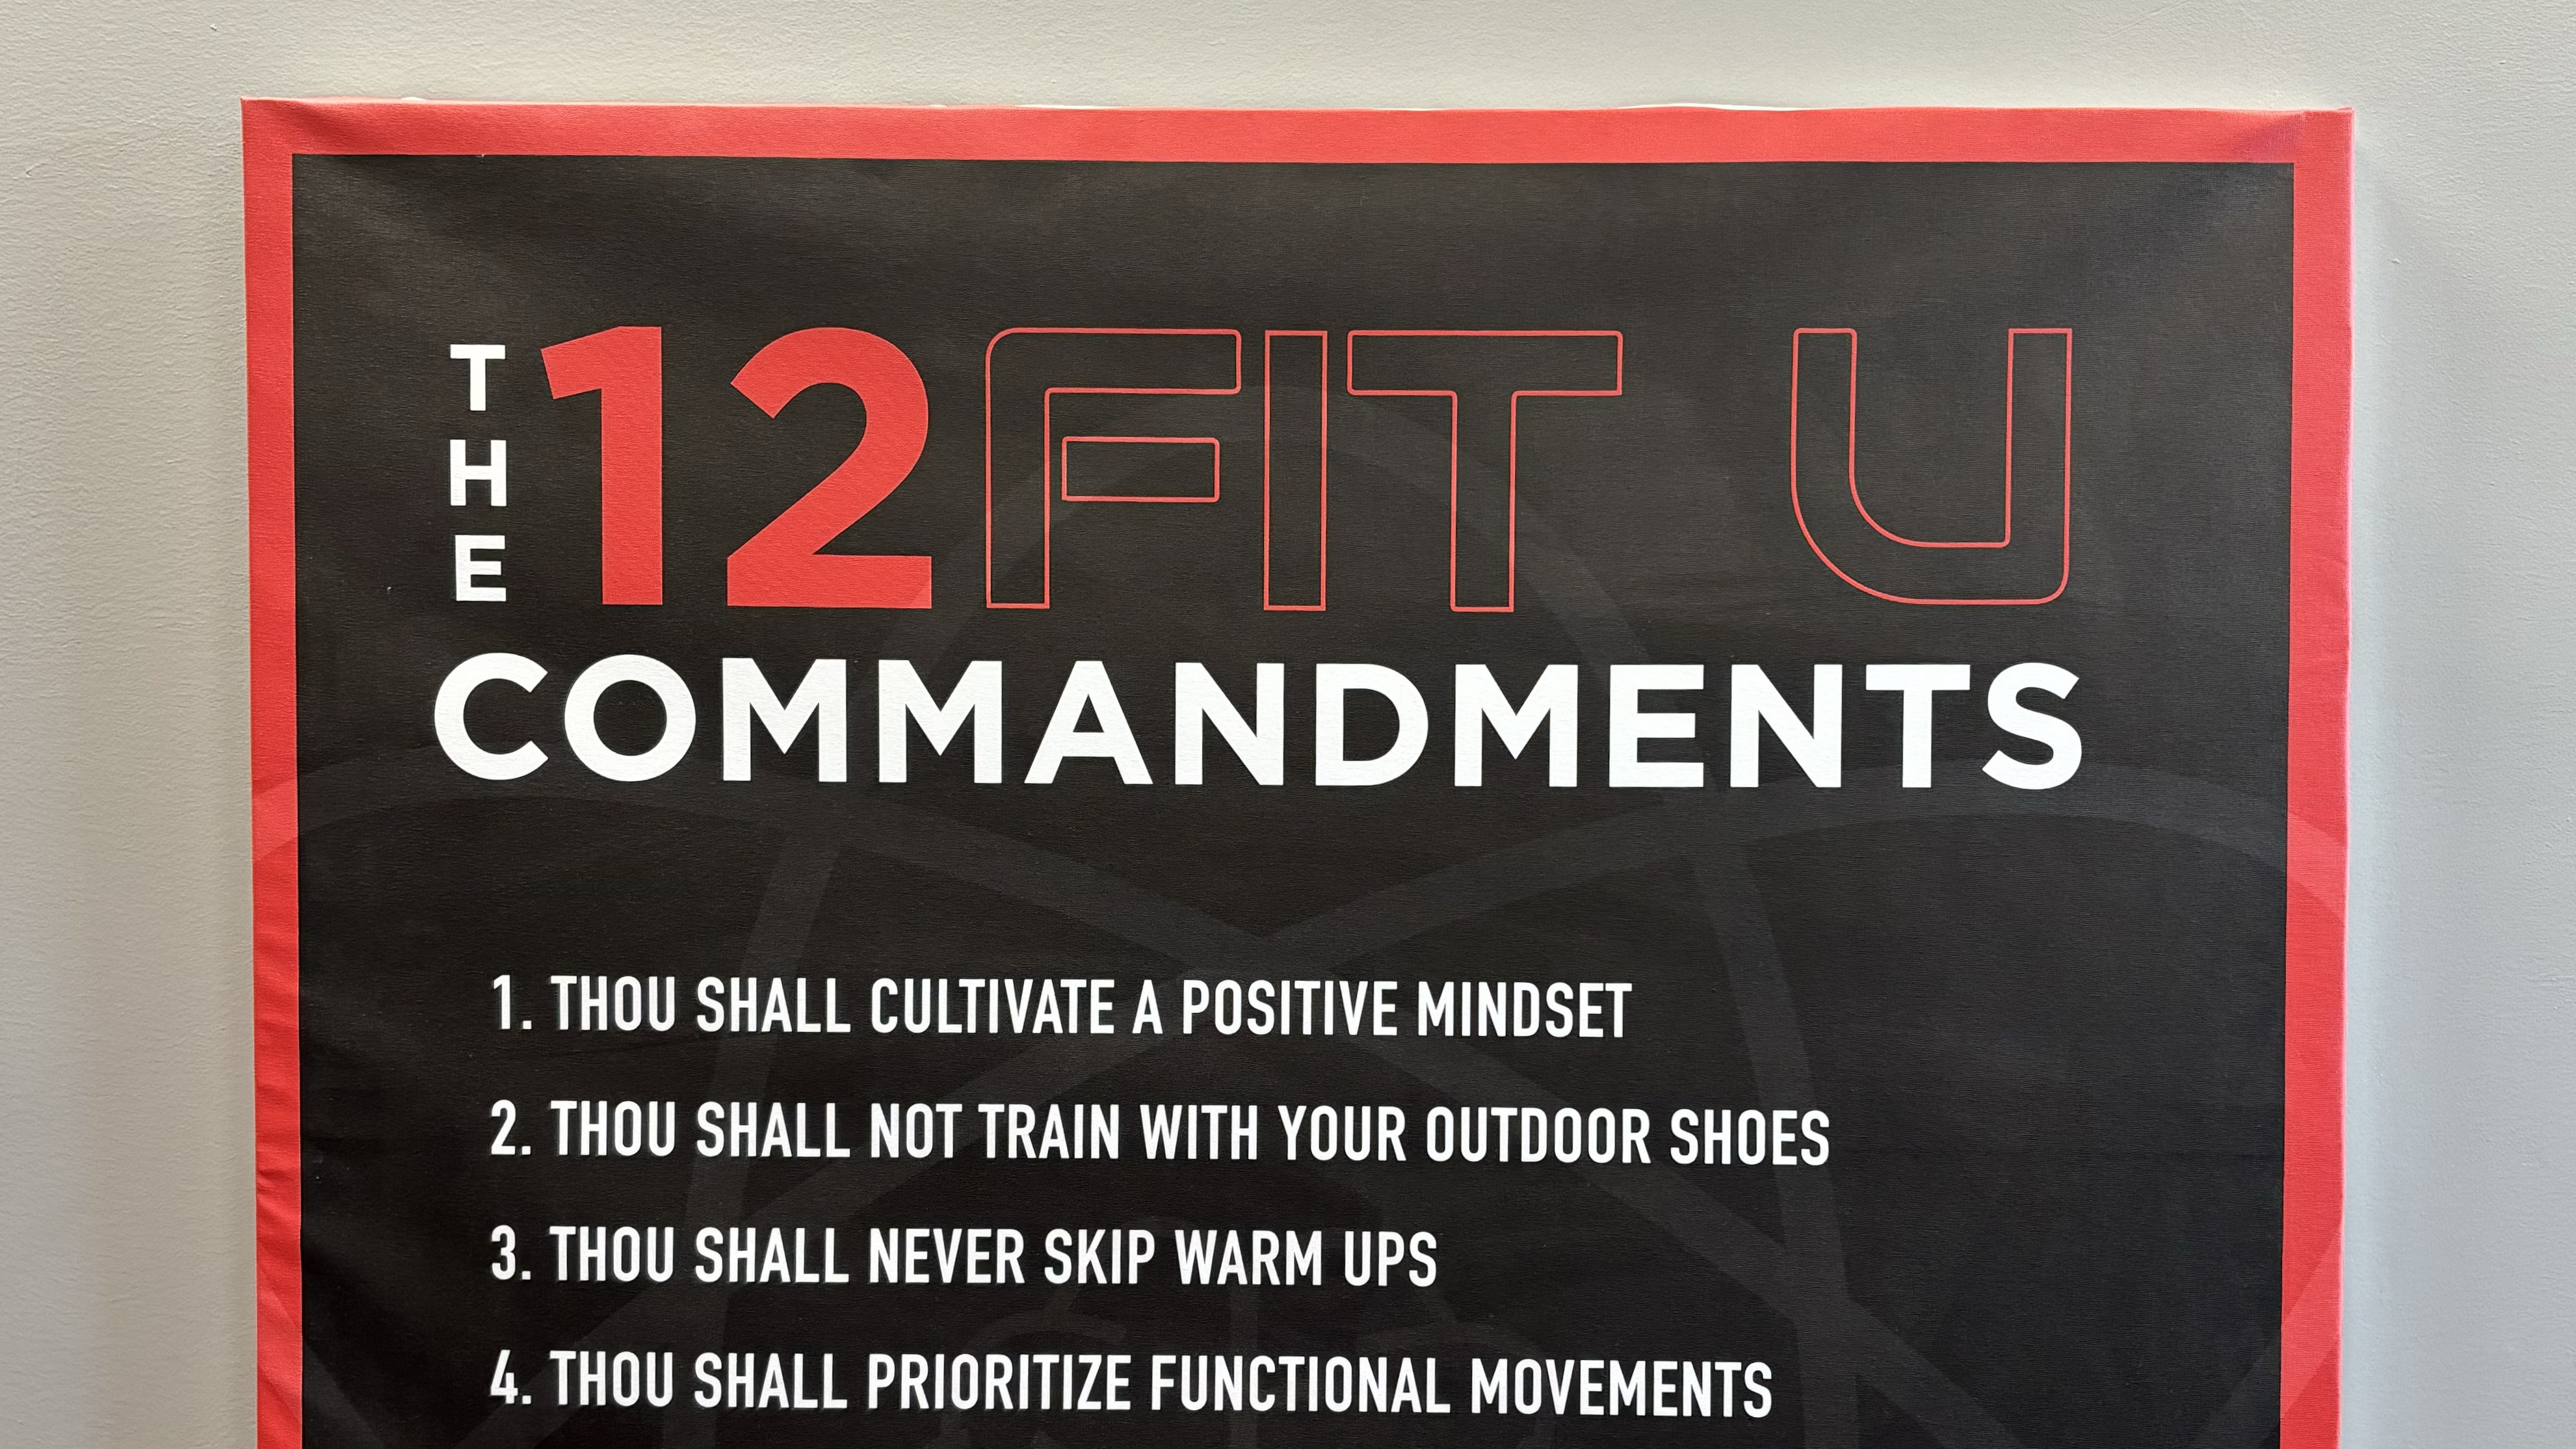 Image des '12 Commandements' chez Studio Fit U, affichant les principes clés du gym privé à Montréal qui distinguent leurs services haut de gamme des gyms commerciaux traditionnels.